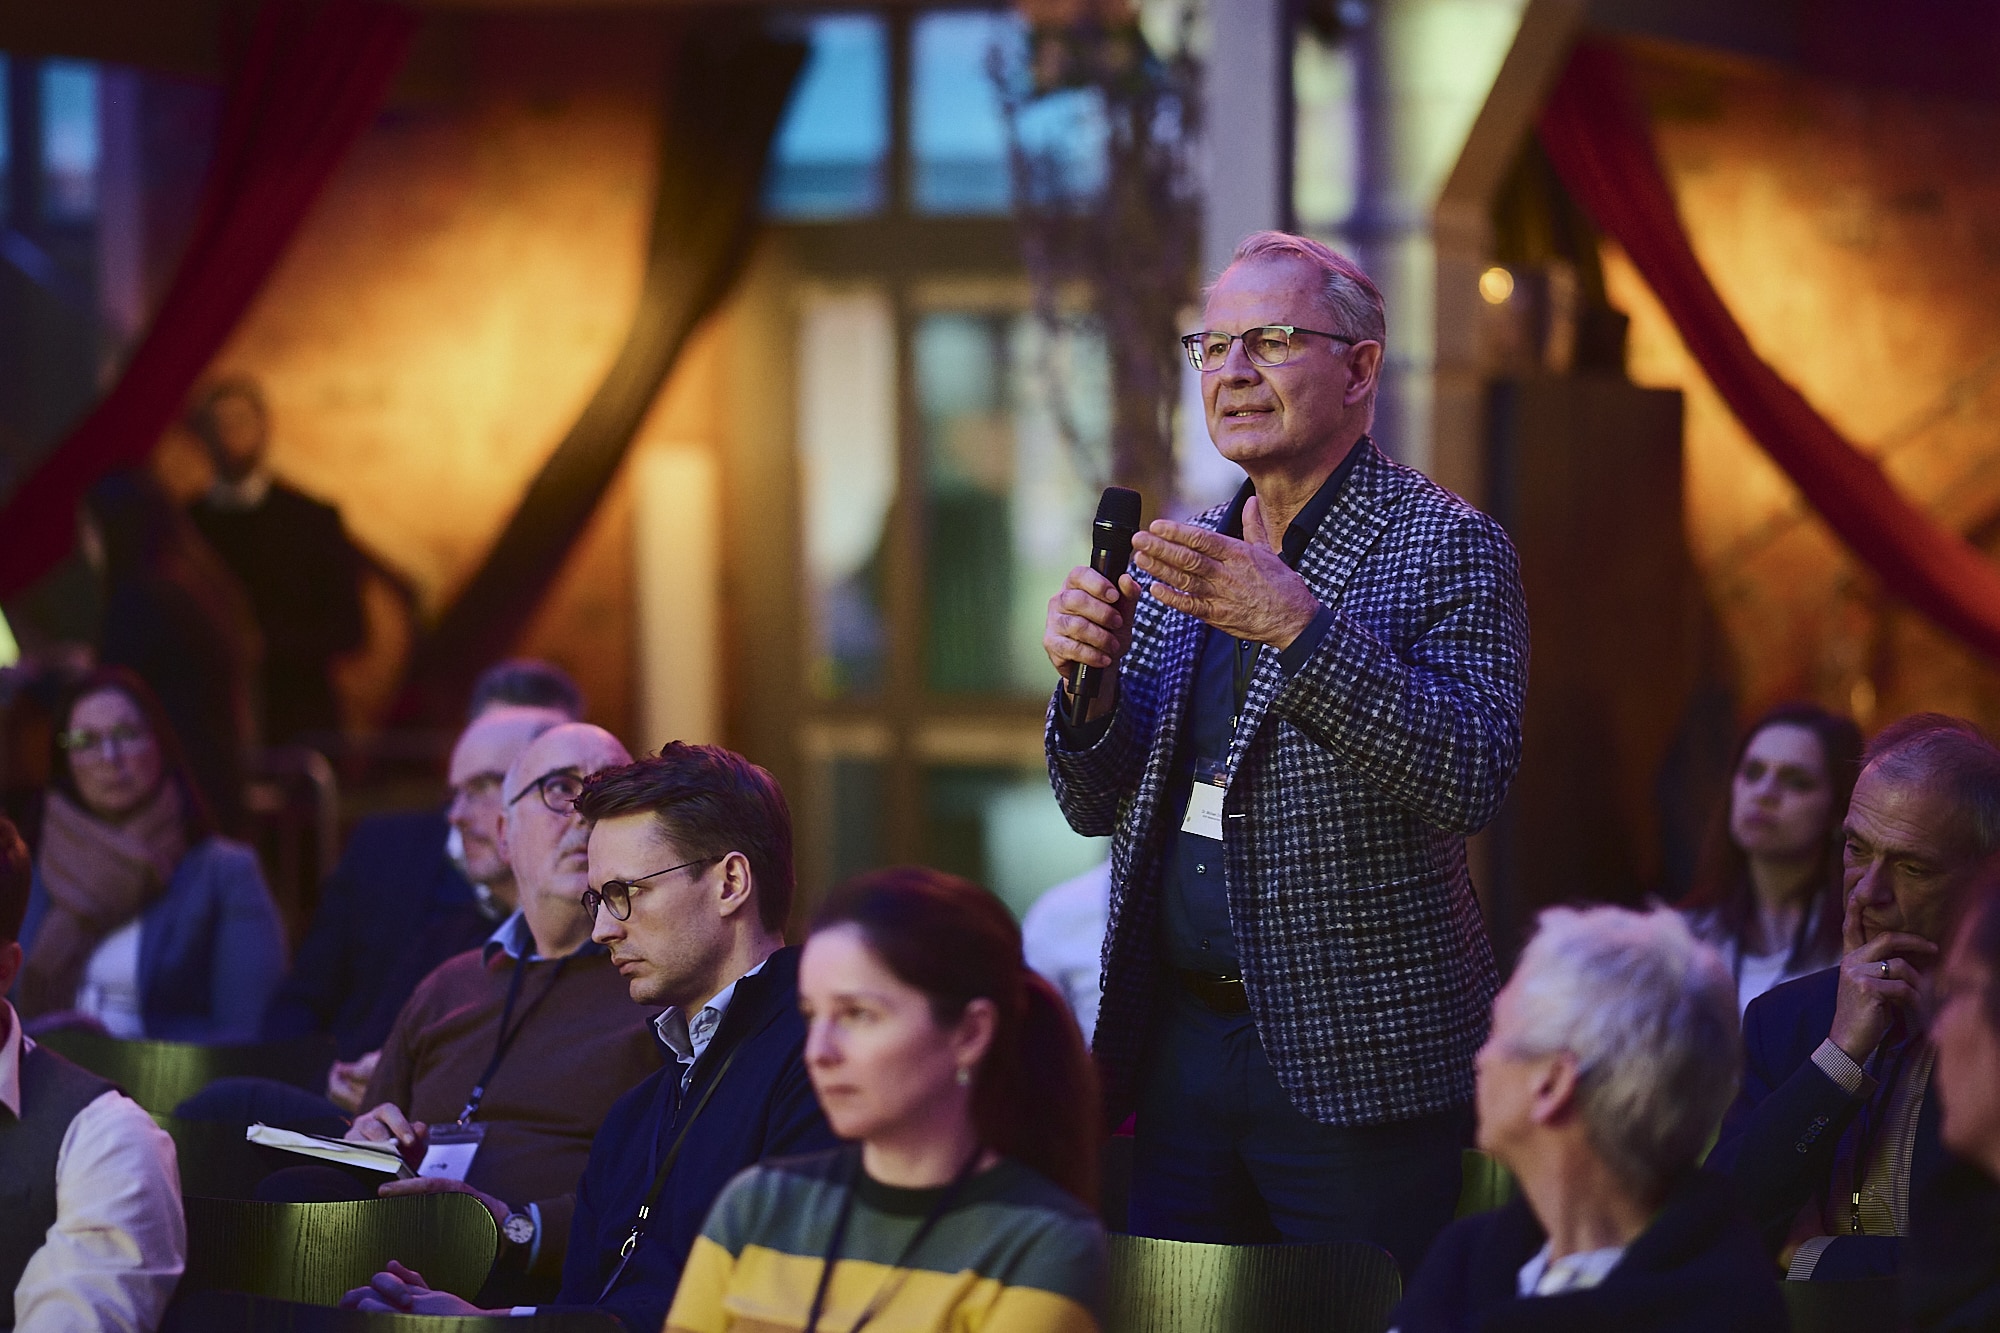 Publikumsfragen kamen während der Podiumsdiskussion ebenfalls zur Sprache (Foto: Marco Bühl)